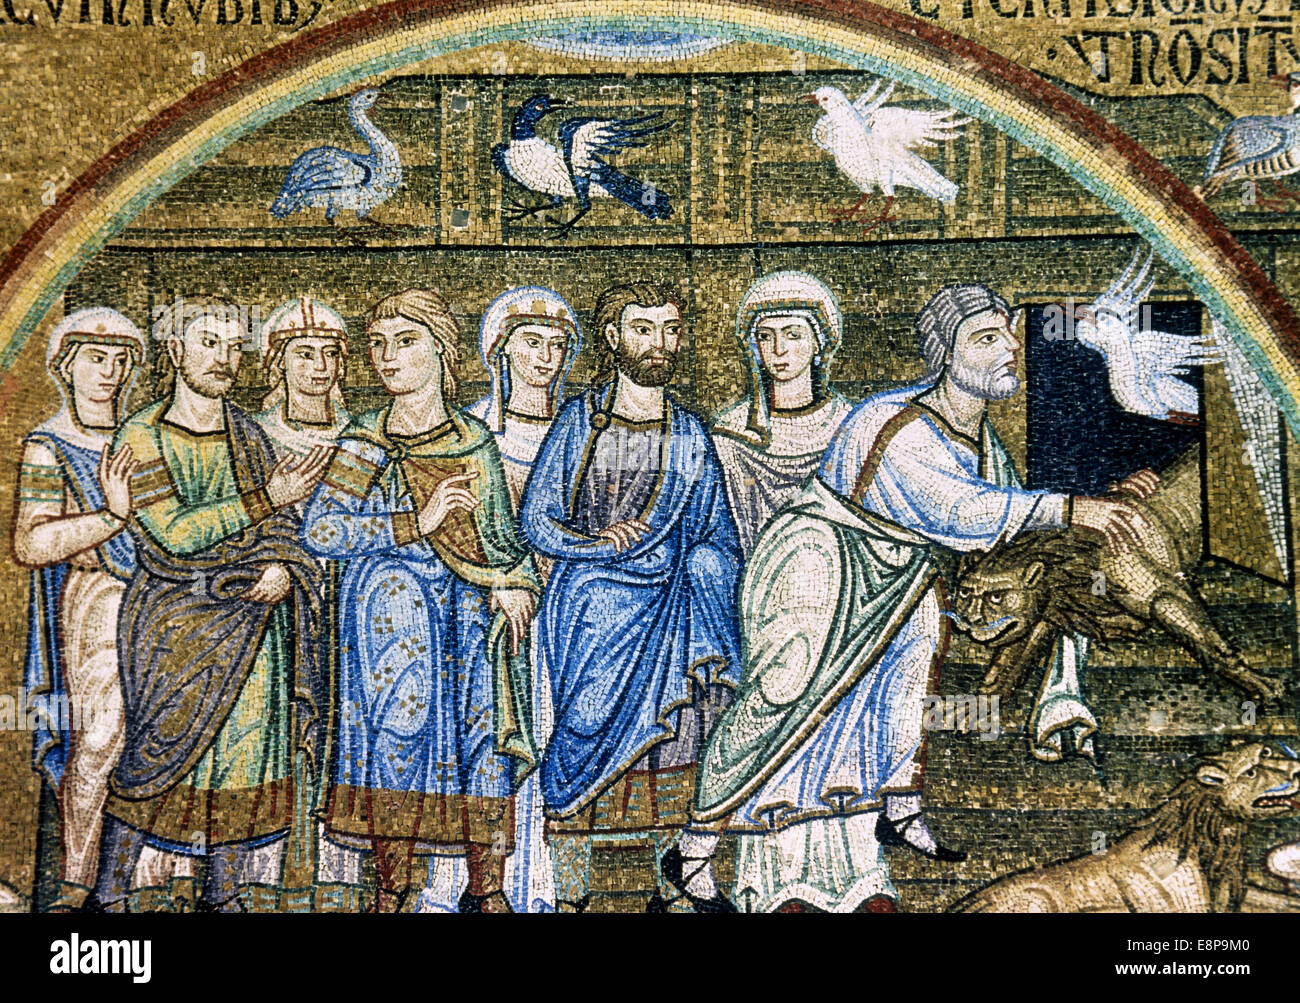 Noè libera gli animali dell'arca, Mosaico dalla Pala d'Oro. Xii-XIV secolo. La Basilica di San Marco. Venezia. L'Italia. Foto Stock